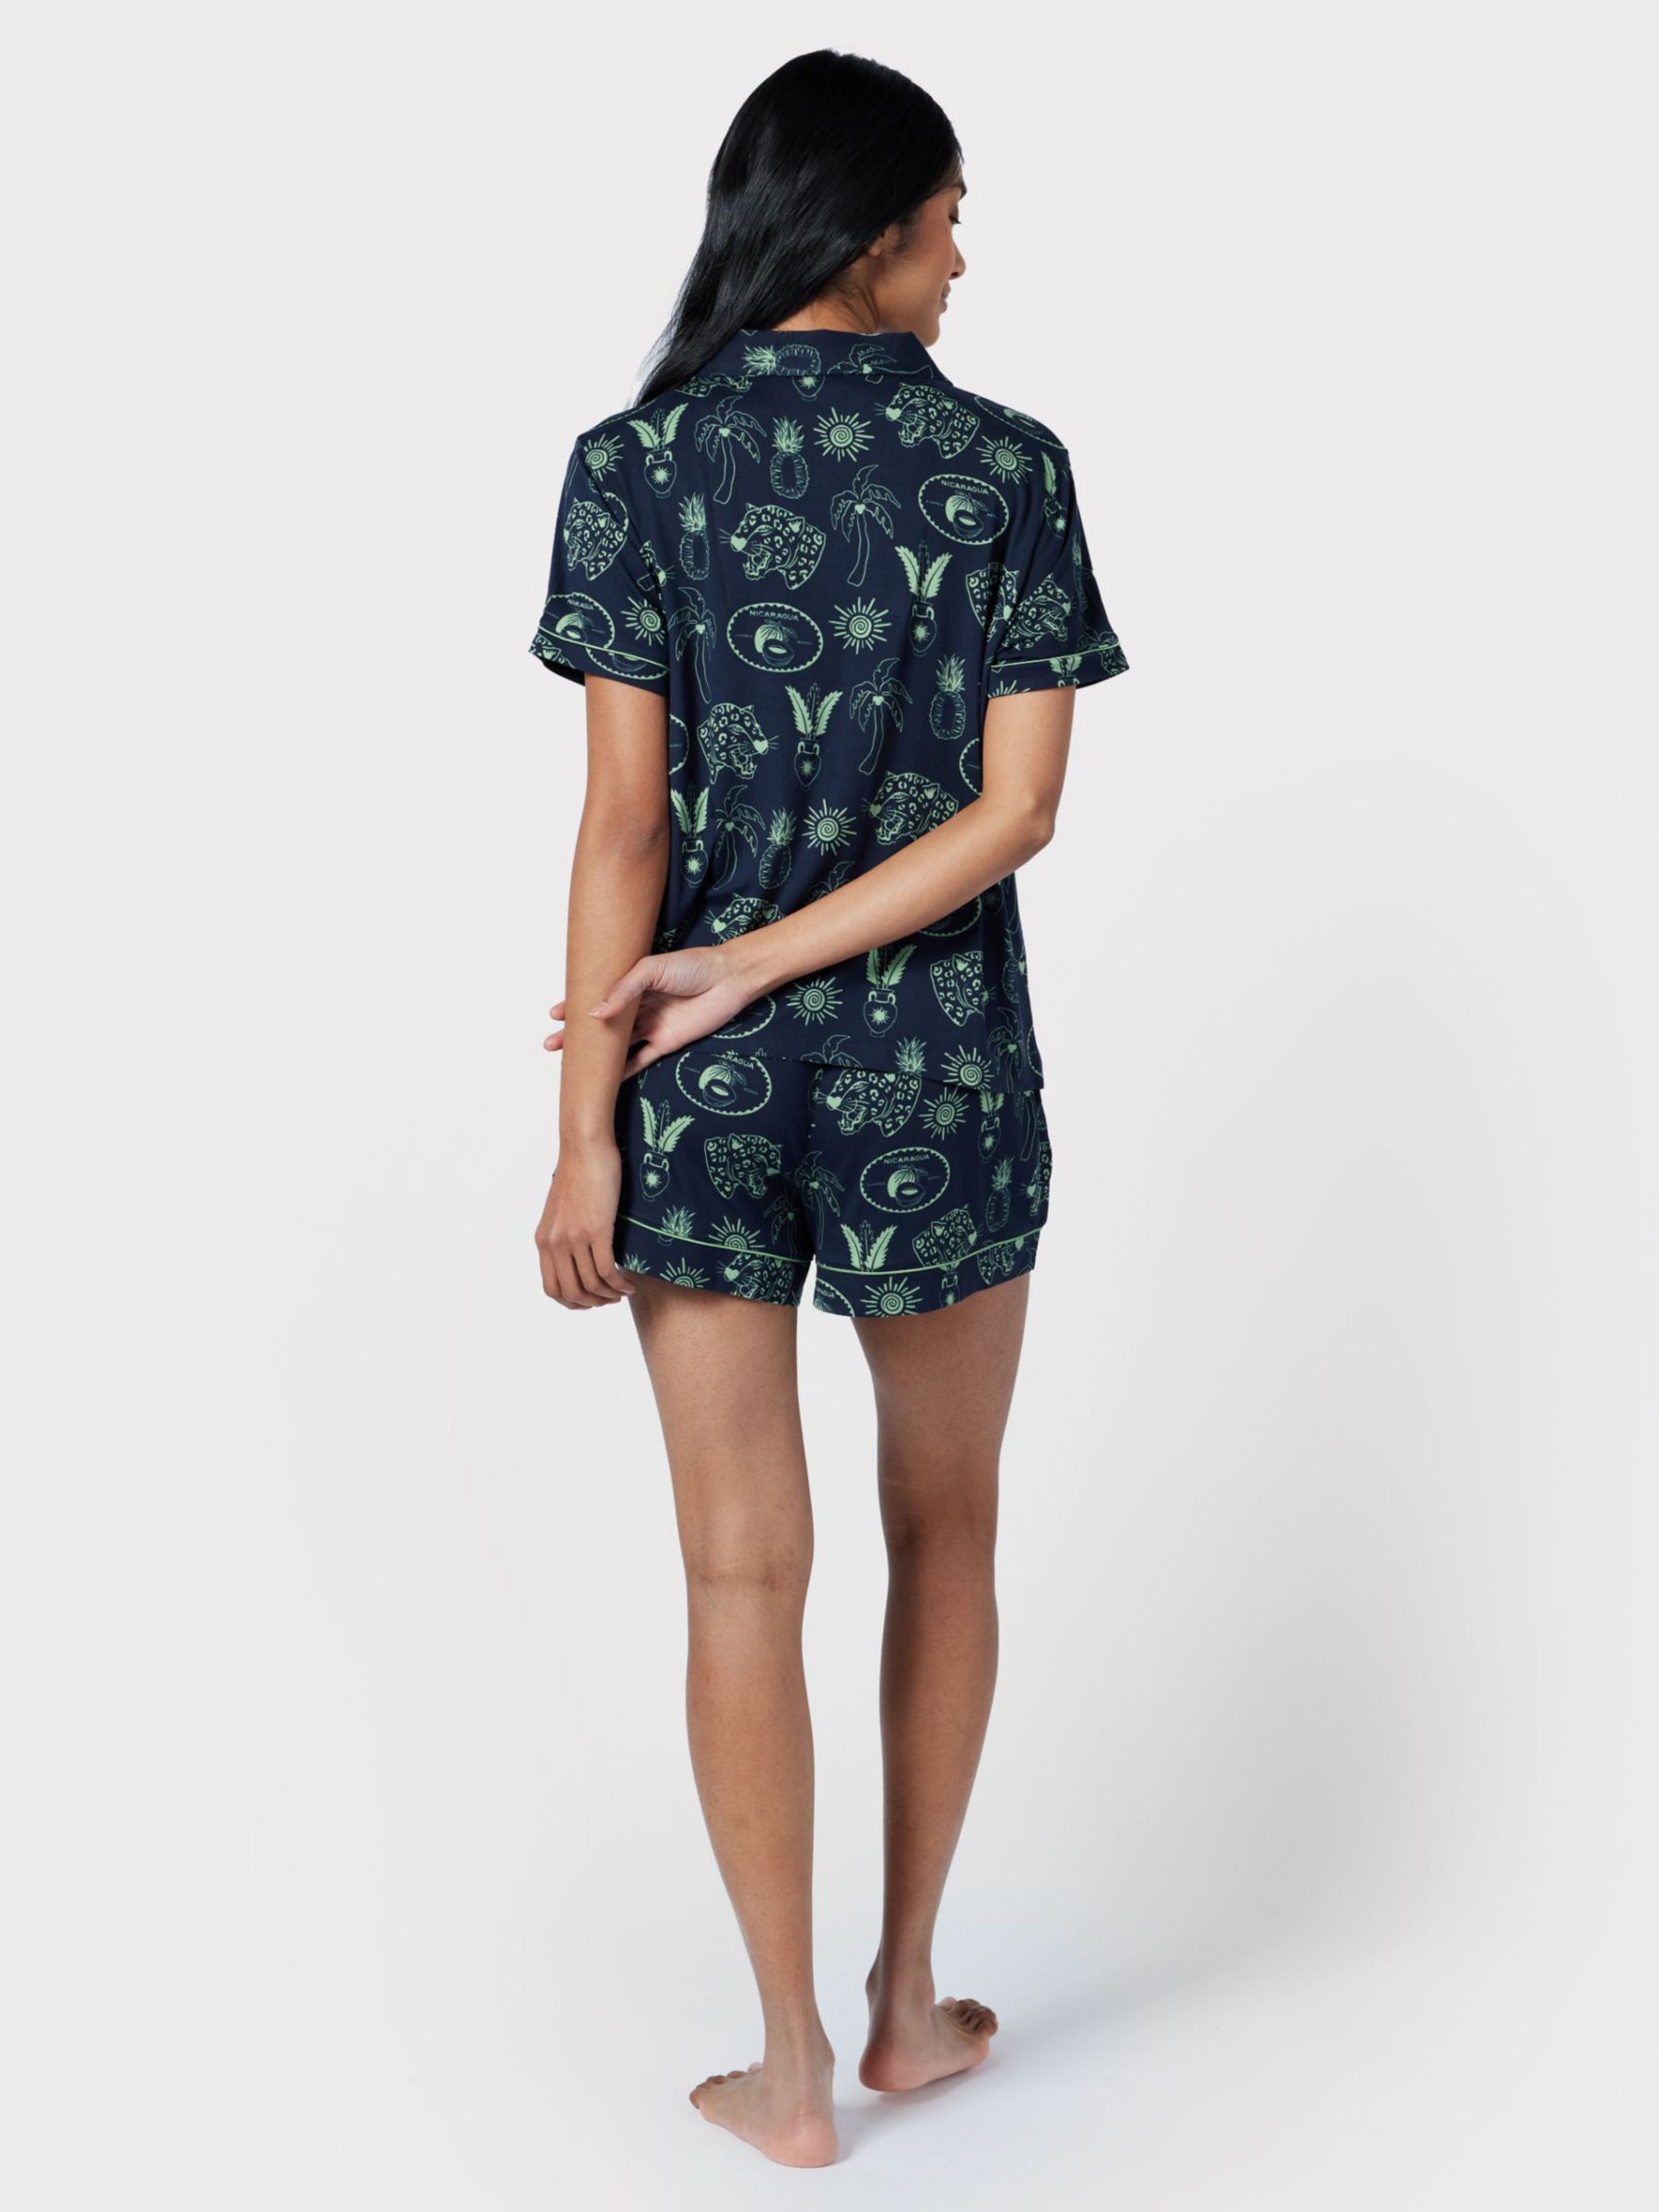 Chelsea Peers Tropical Holiday Print Short Pyjamas, Navy/Green, 6